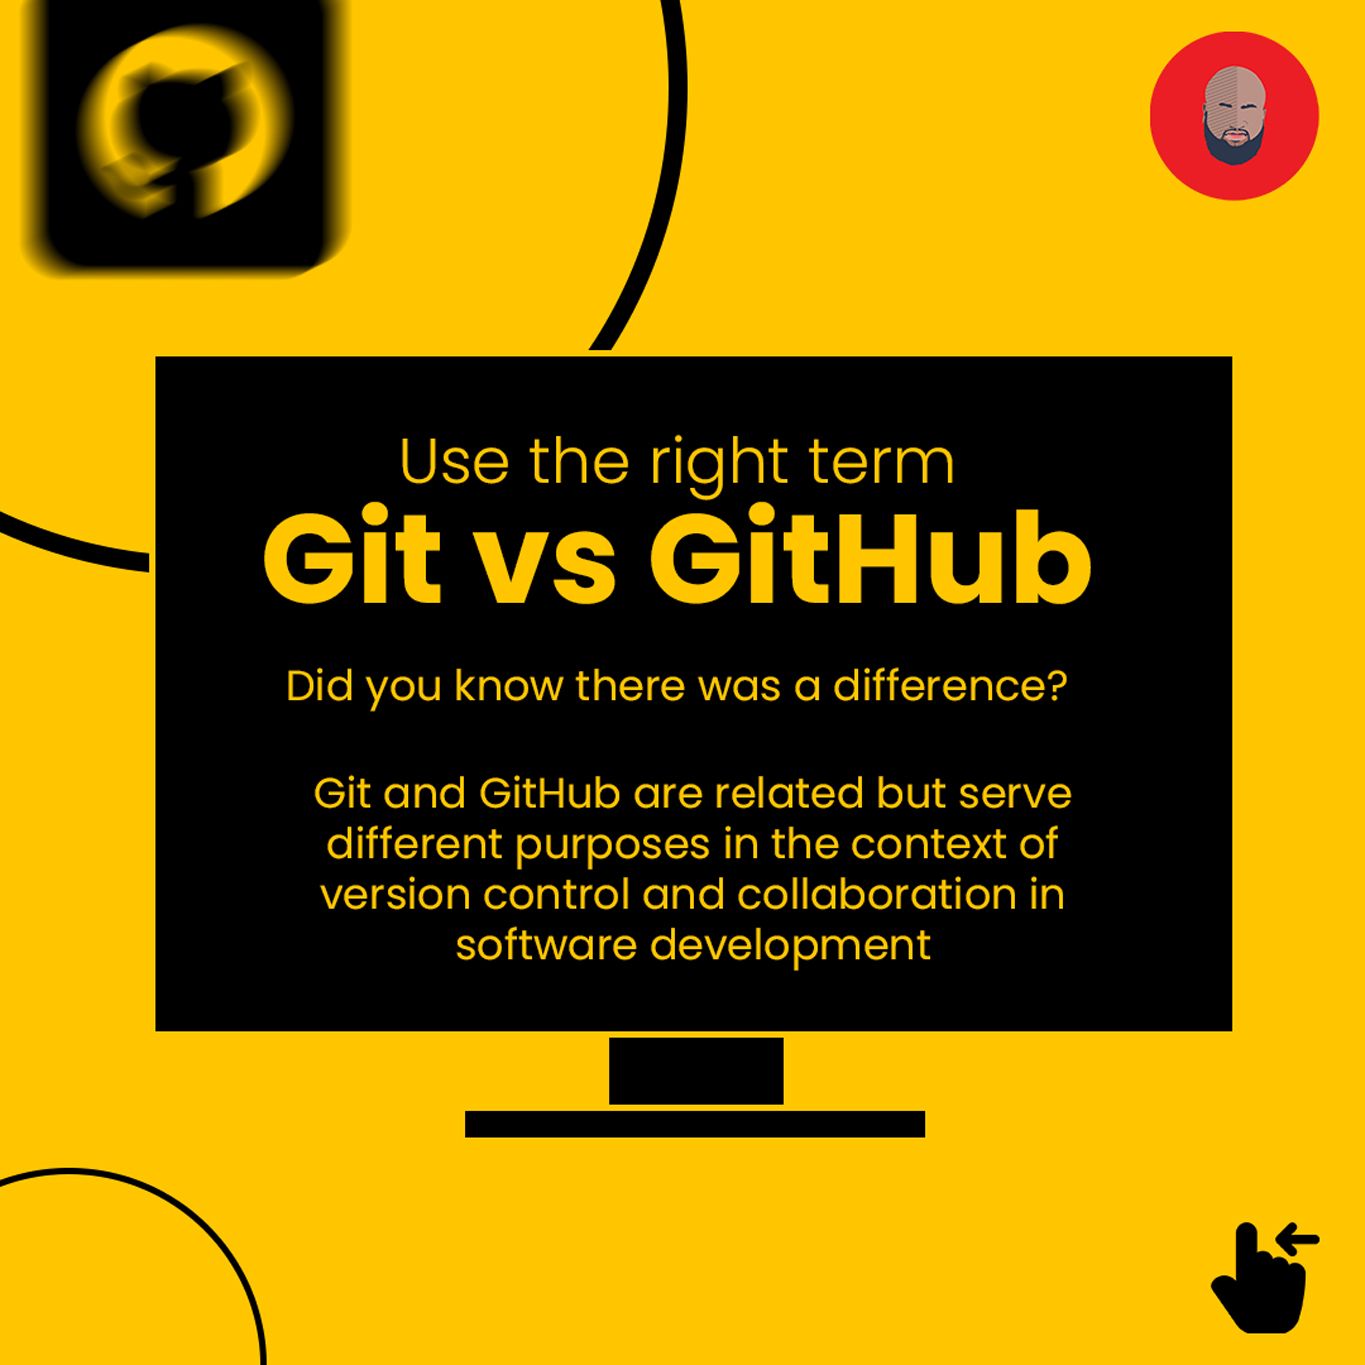 Use the right term - Git vs GitHub